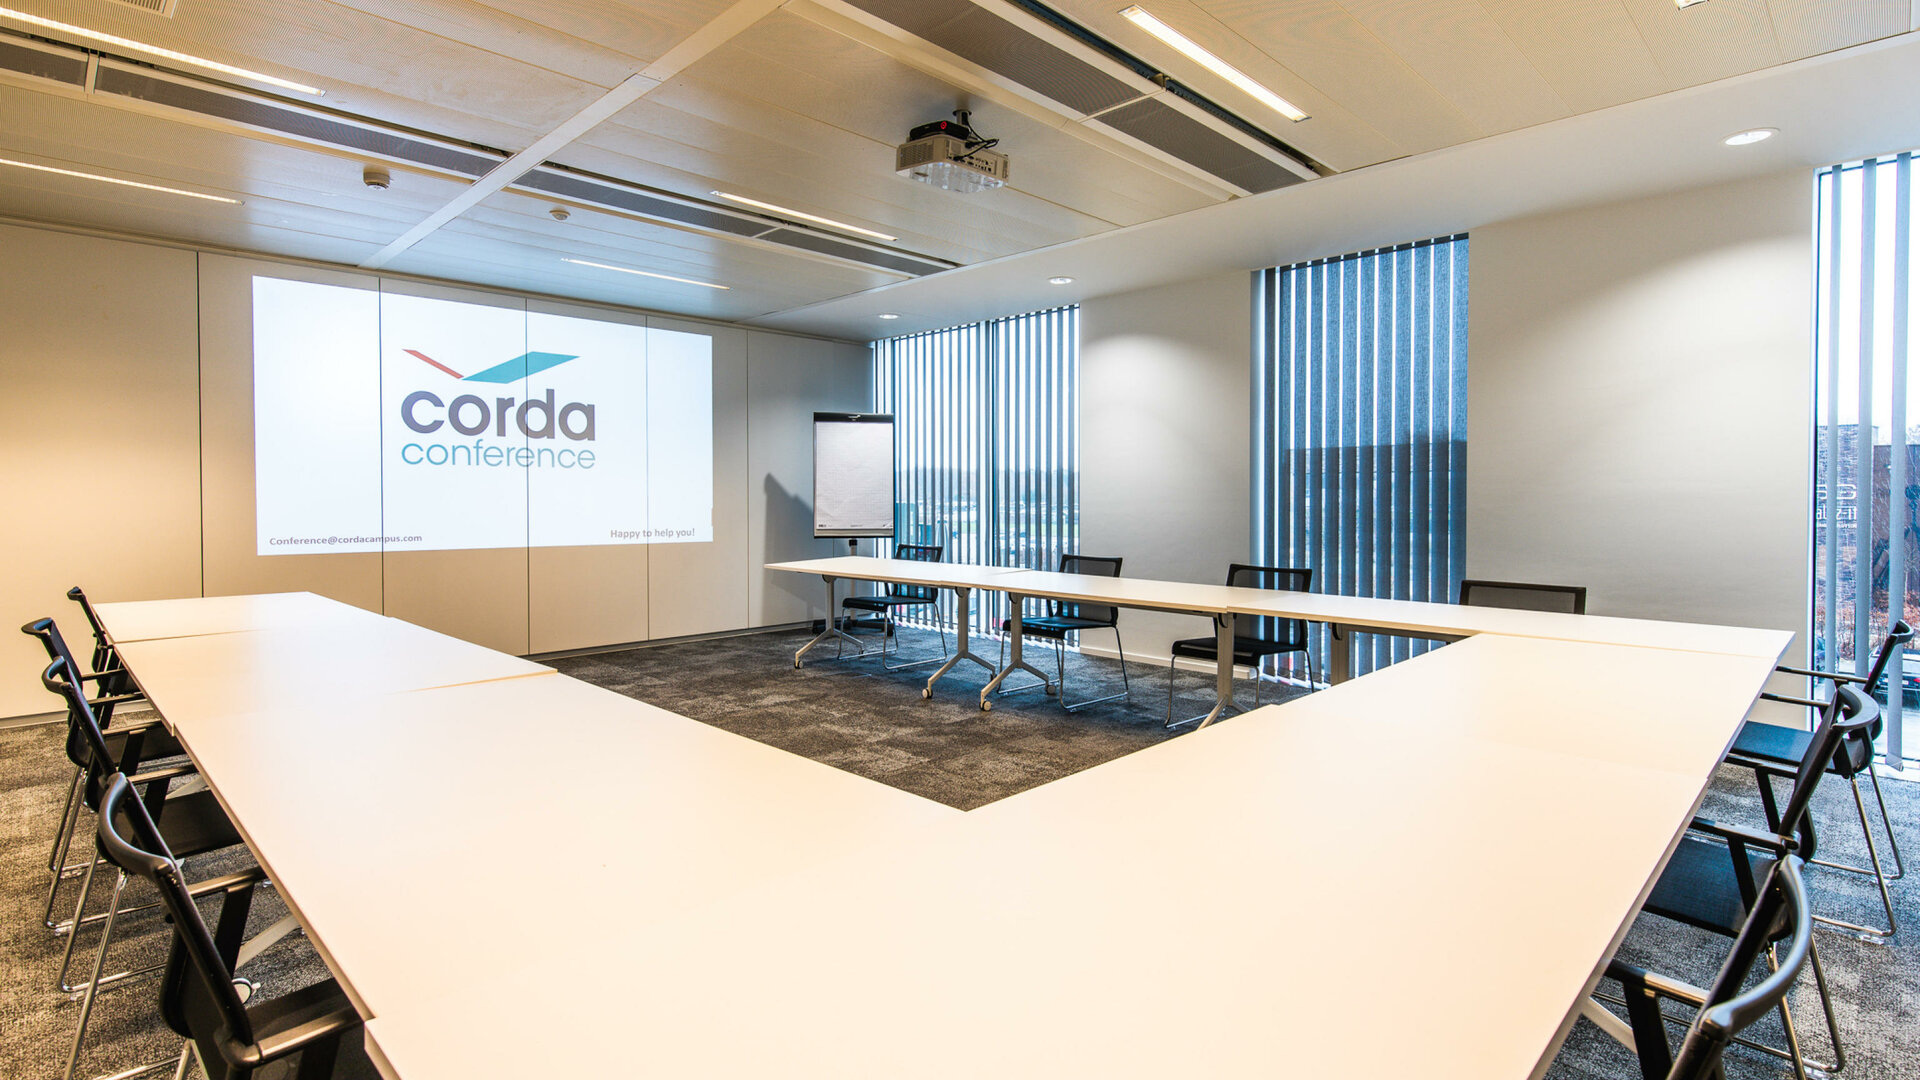 Corda Conference - Corda conference